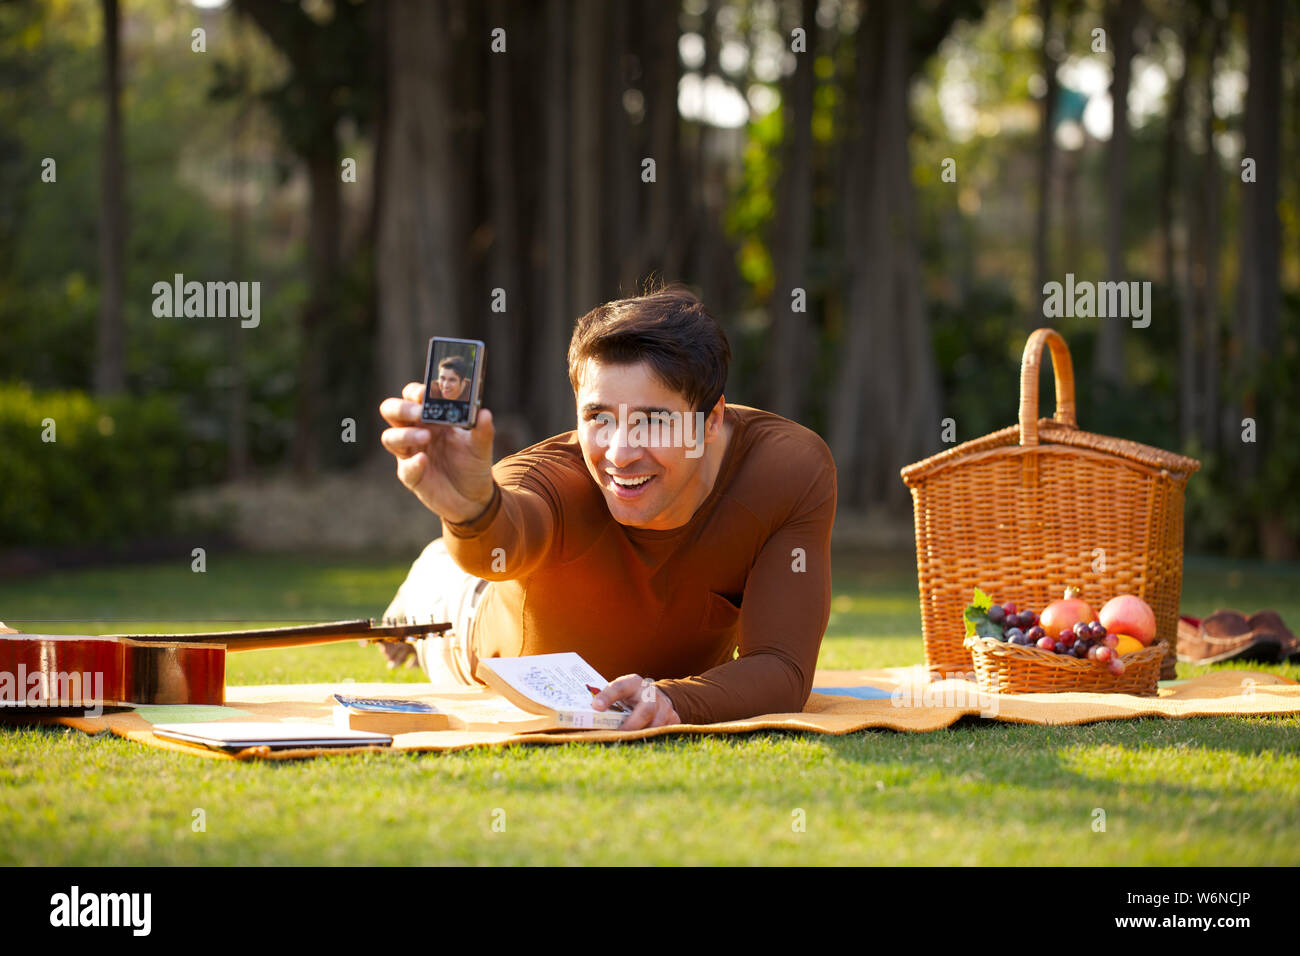 Man taking photo de lui-même avec un téléphone mobile Banque D'Images